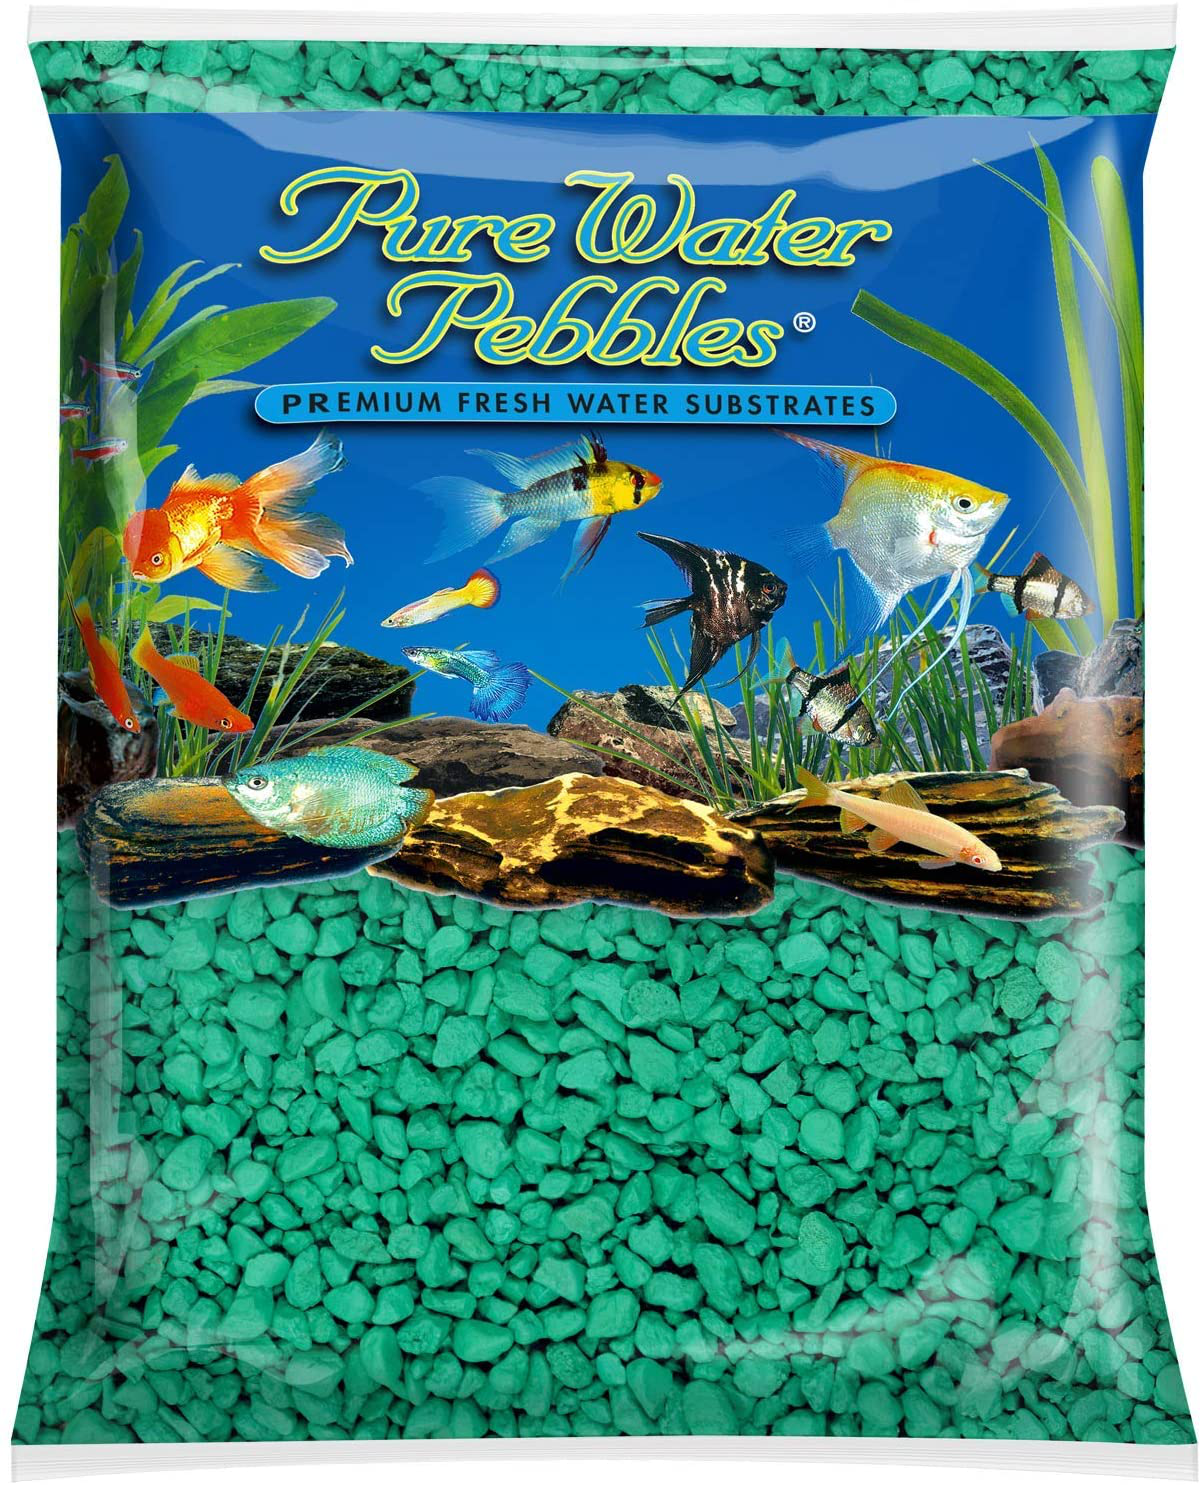 Pure Water Pebbles Nature'S Ocean Aquarium Gravel Turquoise Gravel 5-Lb